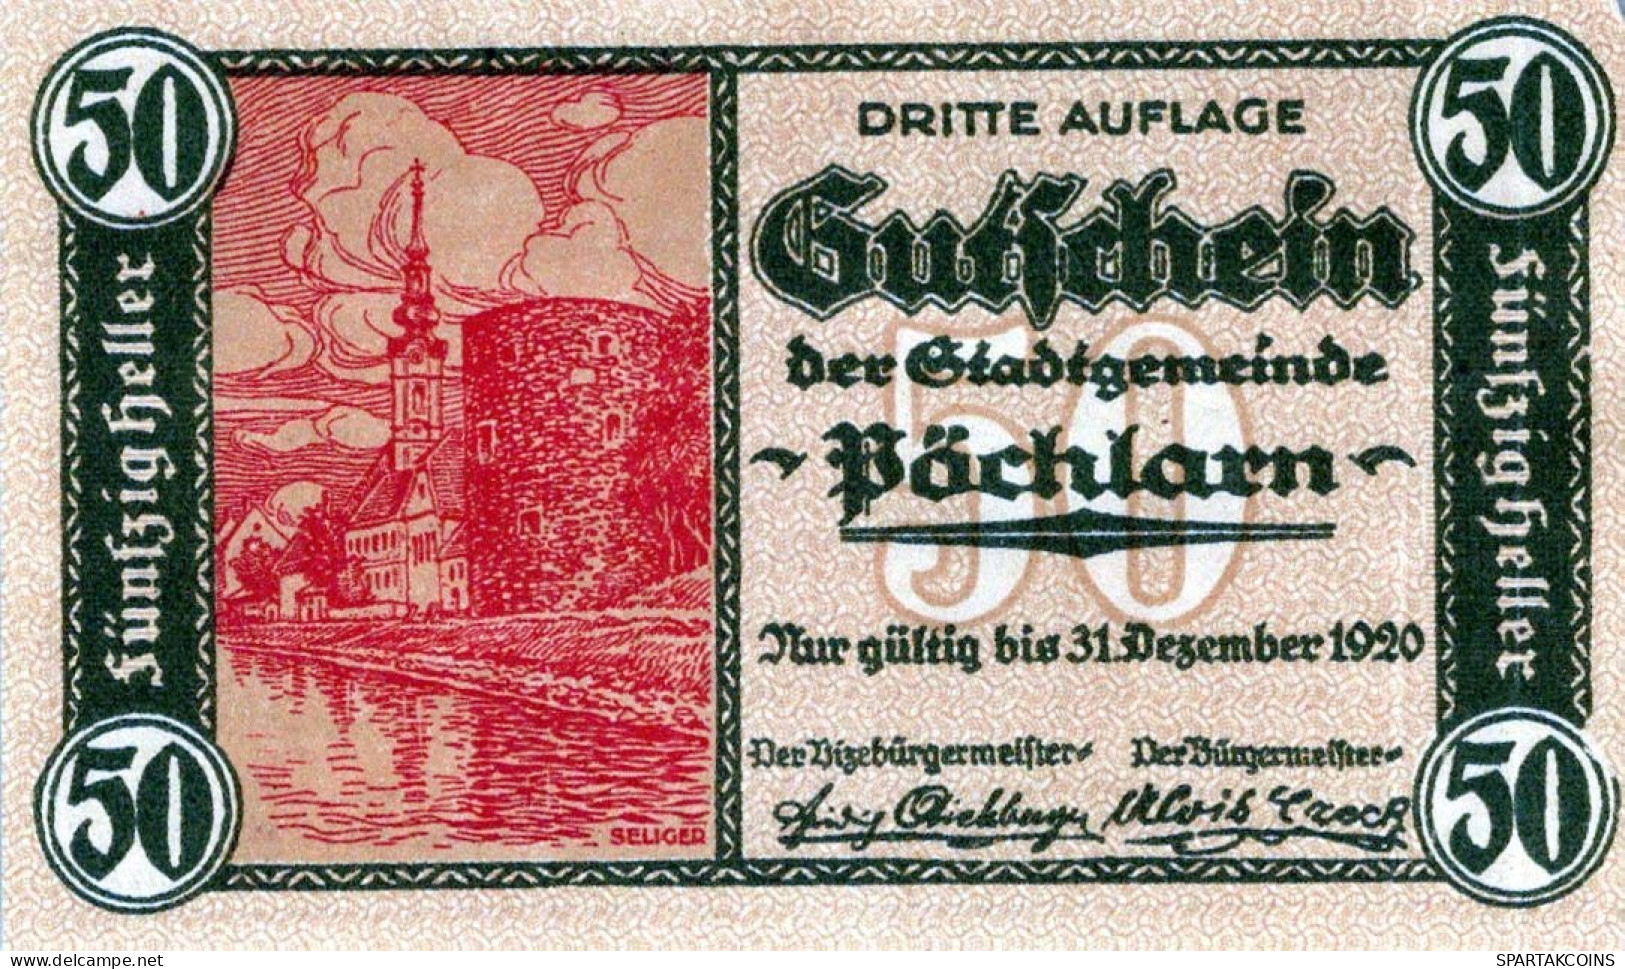 50 HELLER 1920 Stadt PoCHLARN Niedrigeren Österreich Notgeld Banknote #PI305 - Lokale Ausgaben